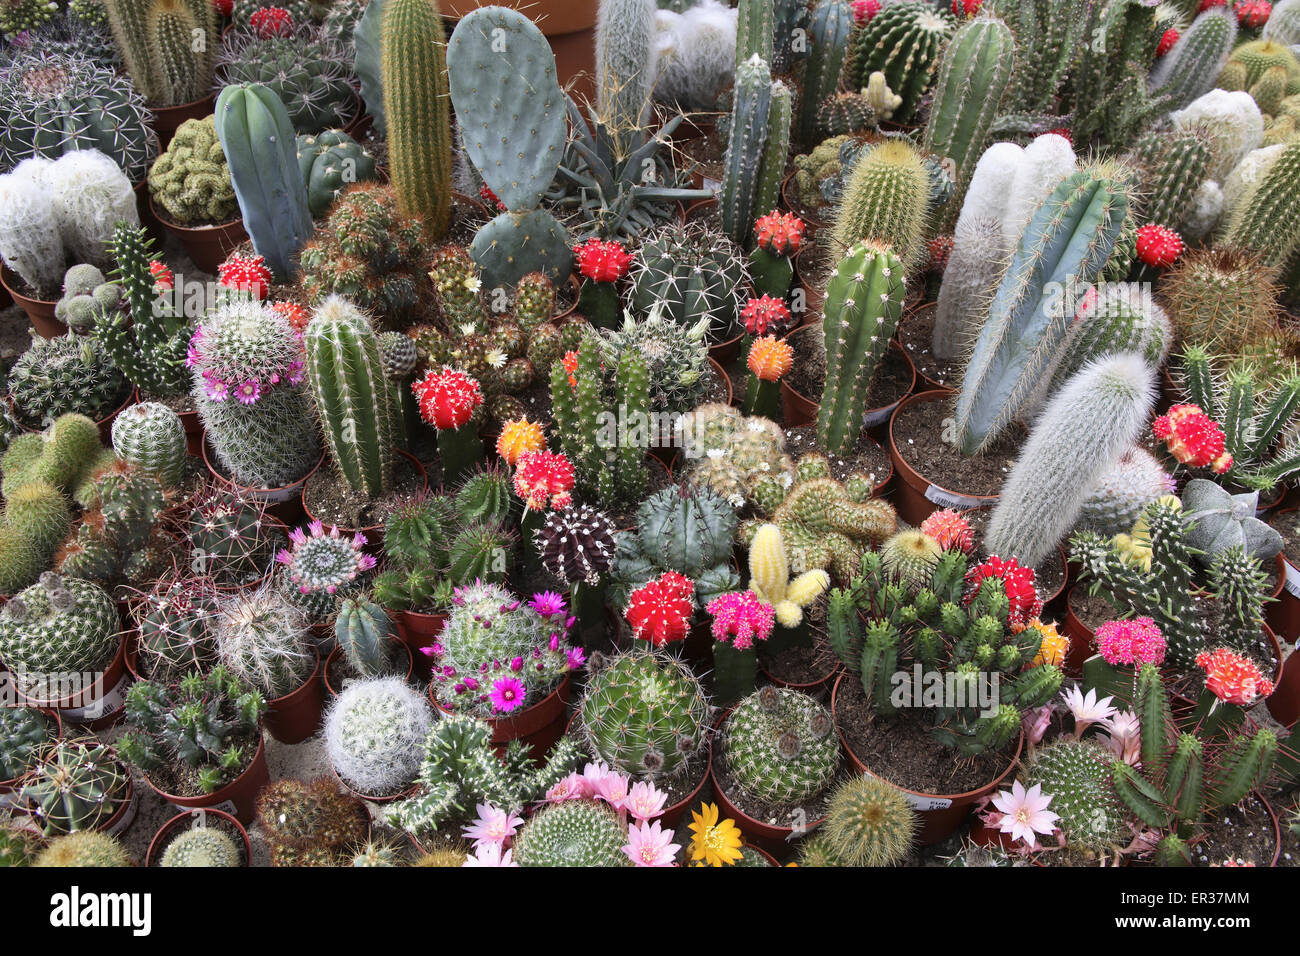 DEU, Germany, Ruhr Area, blooming cactuses in a market garden.  DEU, Deutschland, bluehende Kakteen in einem Gartencenter. Stock Photo